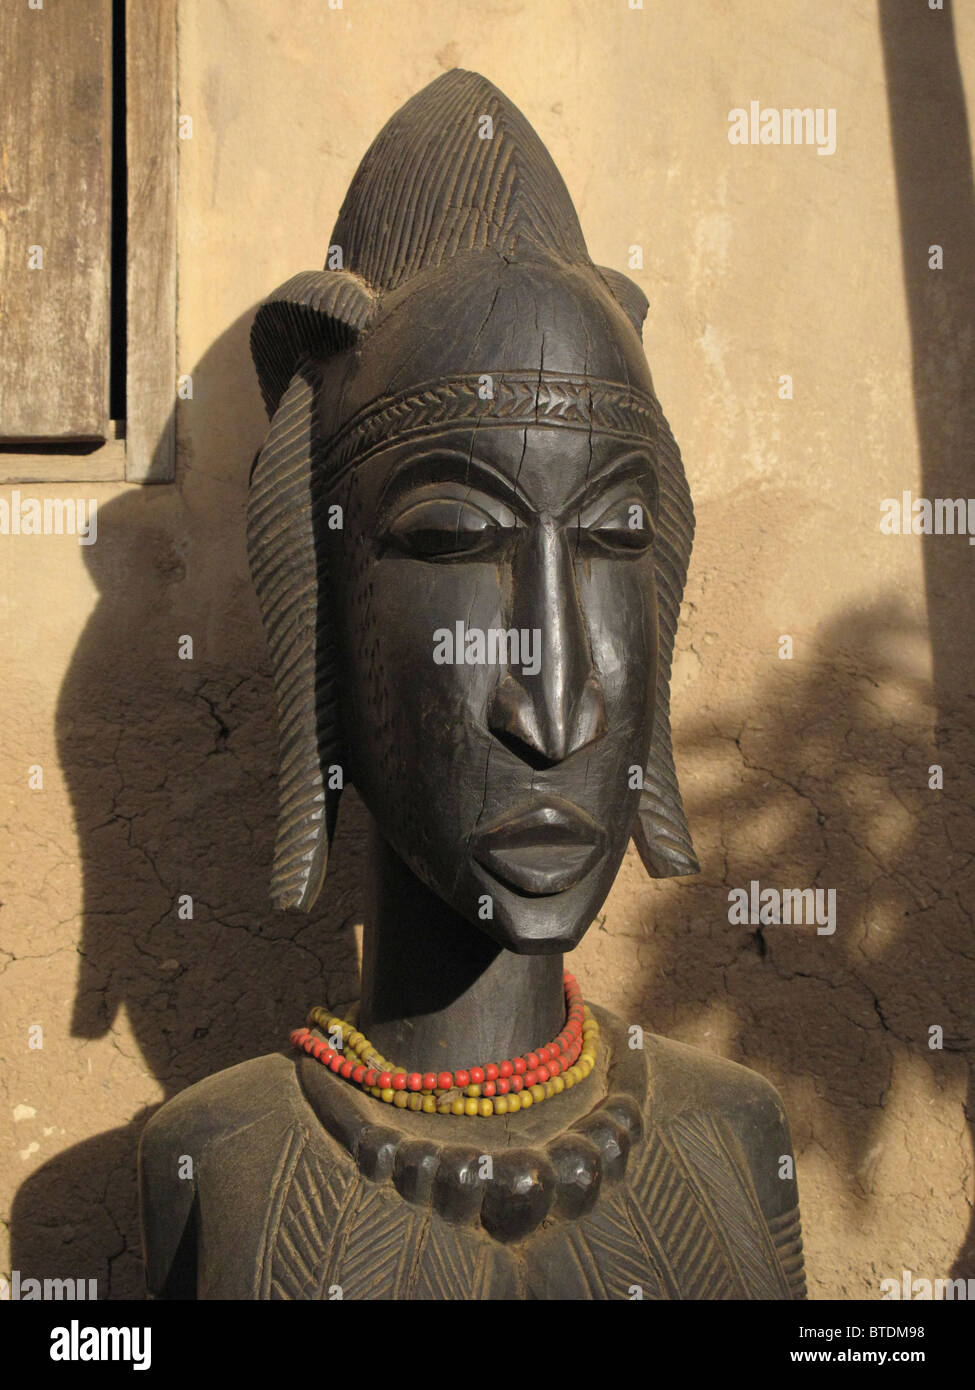 Une sculpture en bois du visage d'une femme Banque D'Images